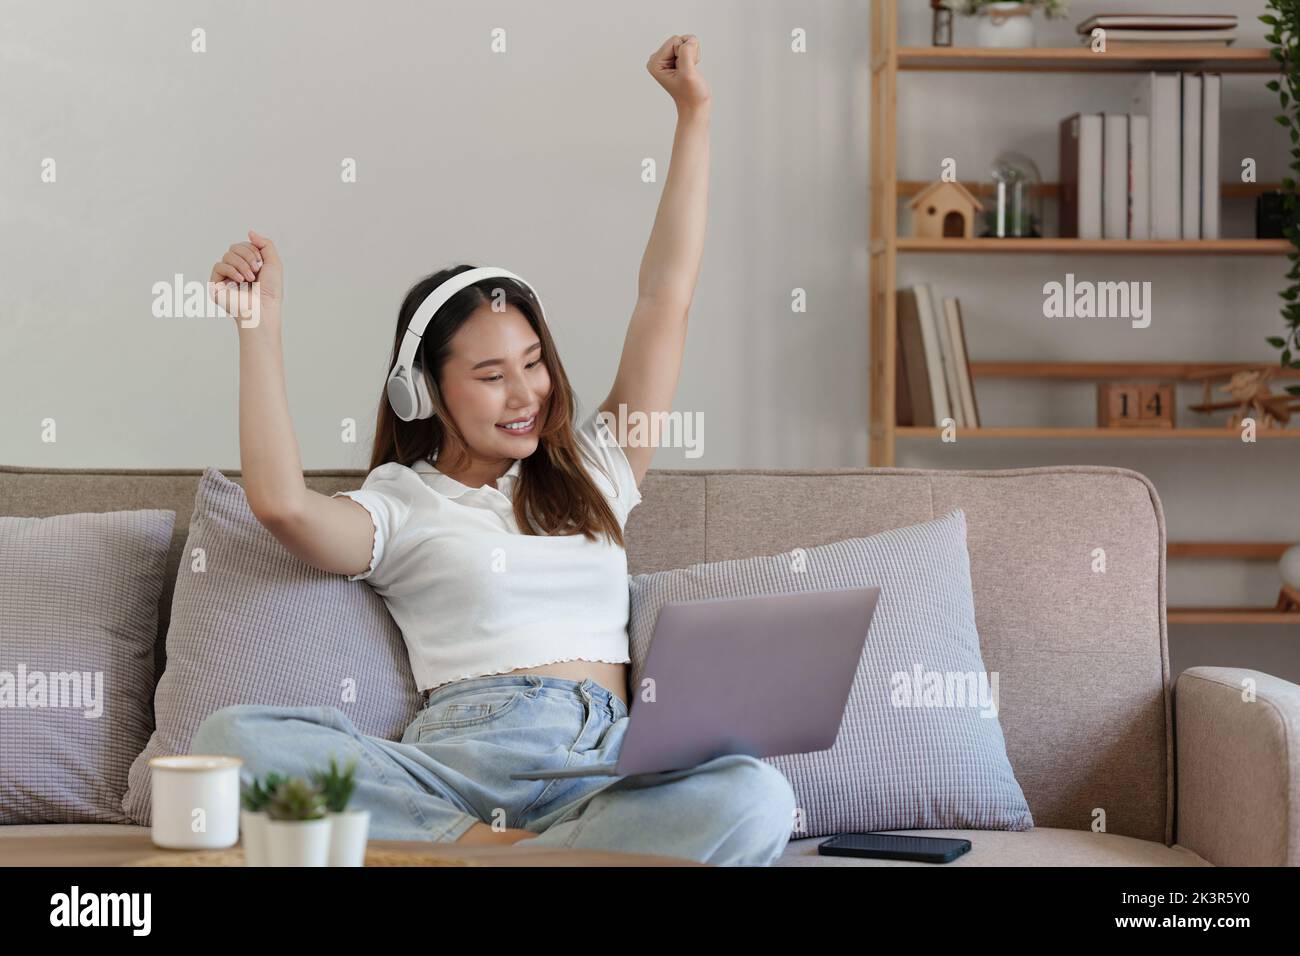 Attraktive lächelnde junge Frau mit Laptop und Musik hören auf dem Sofa zu Hause. Lifestyle-Konzept Stockfoto